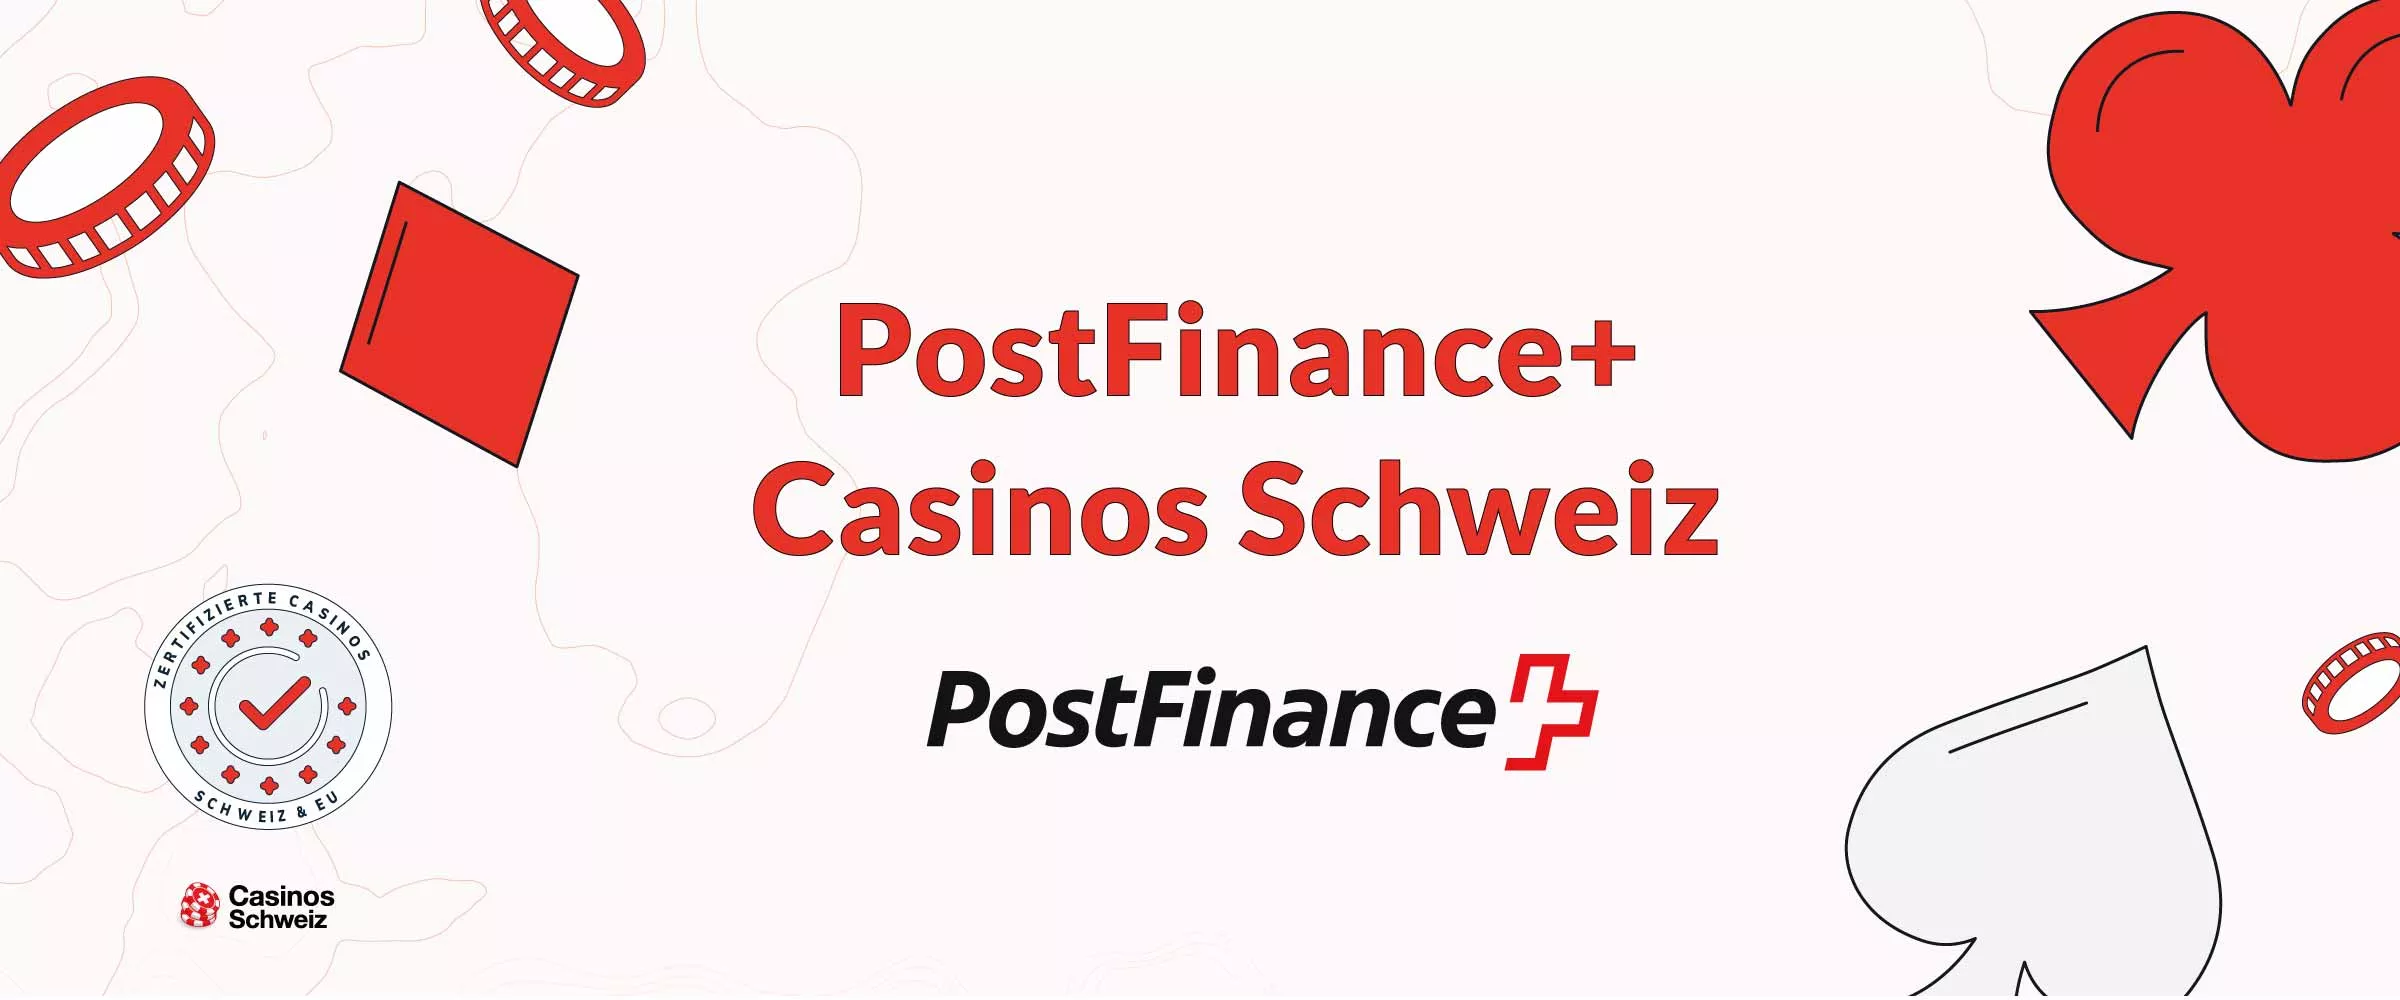 Postfinance Casinos Schweiz